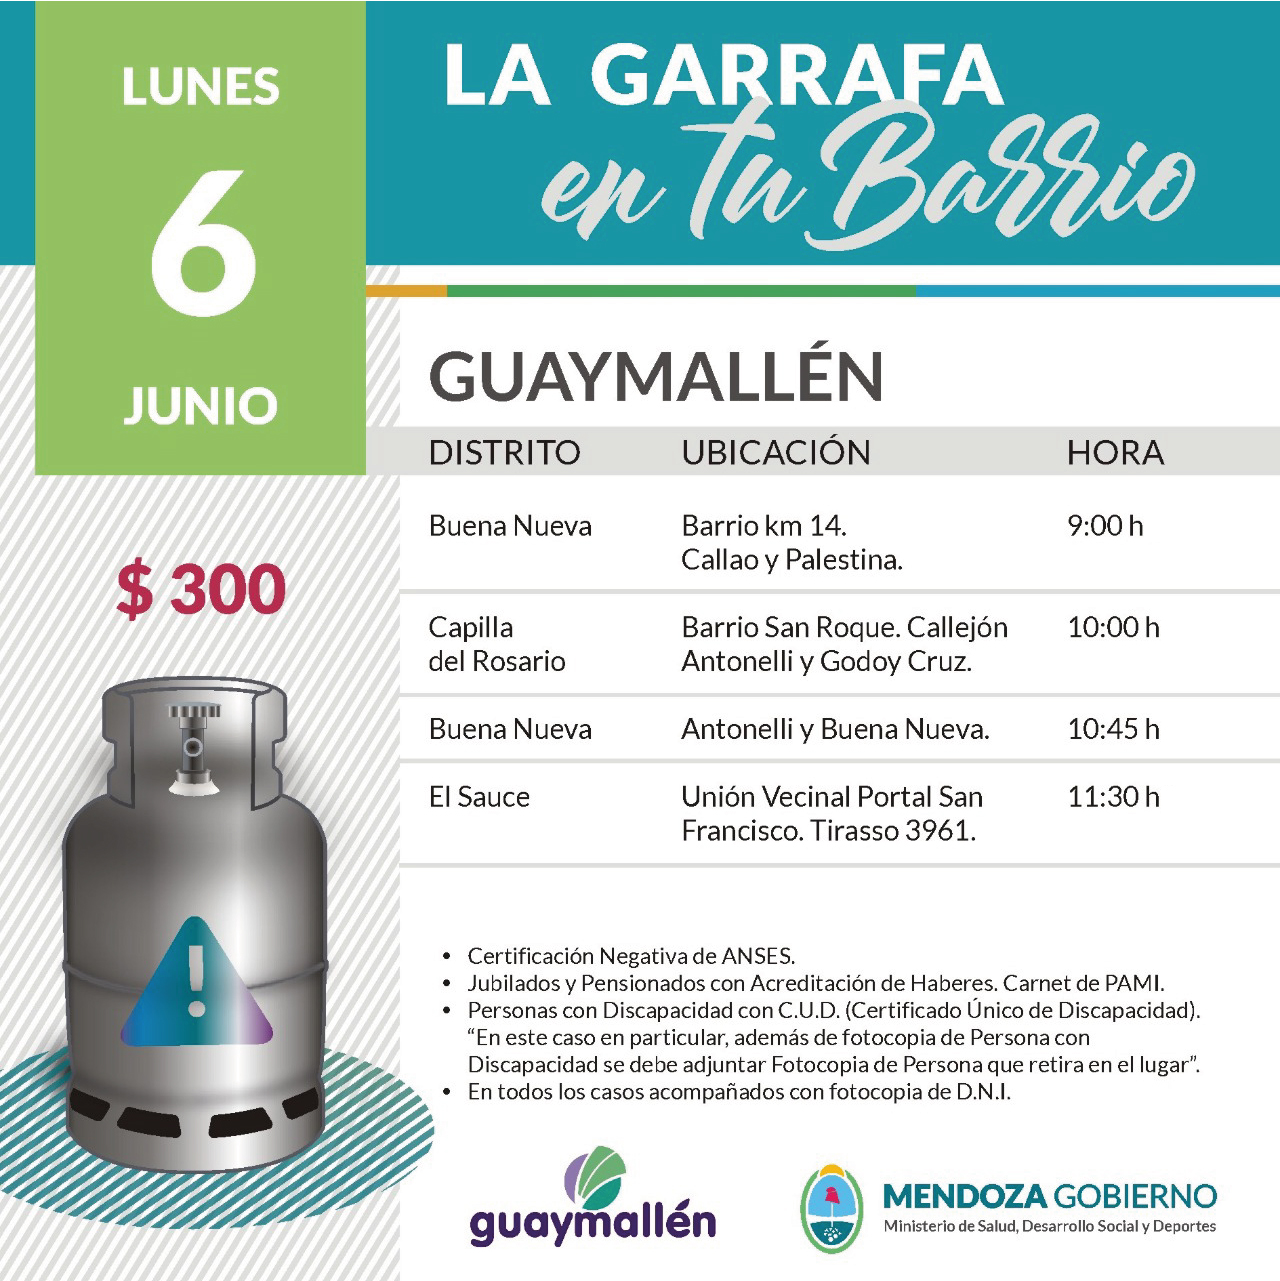 La Garrafa en tu Barrio con subsidio provincial. 6 de junio.